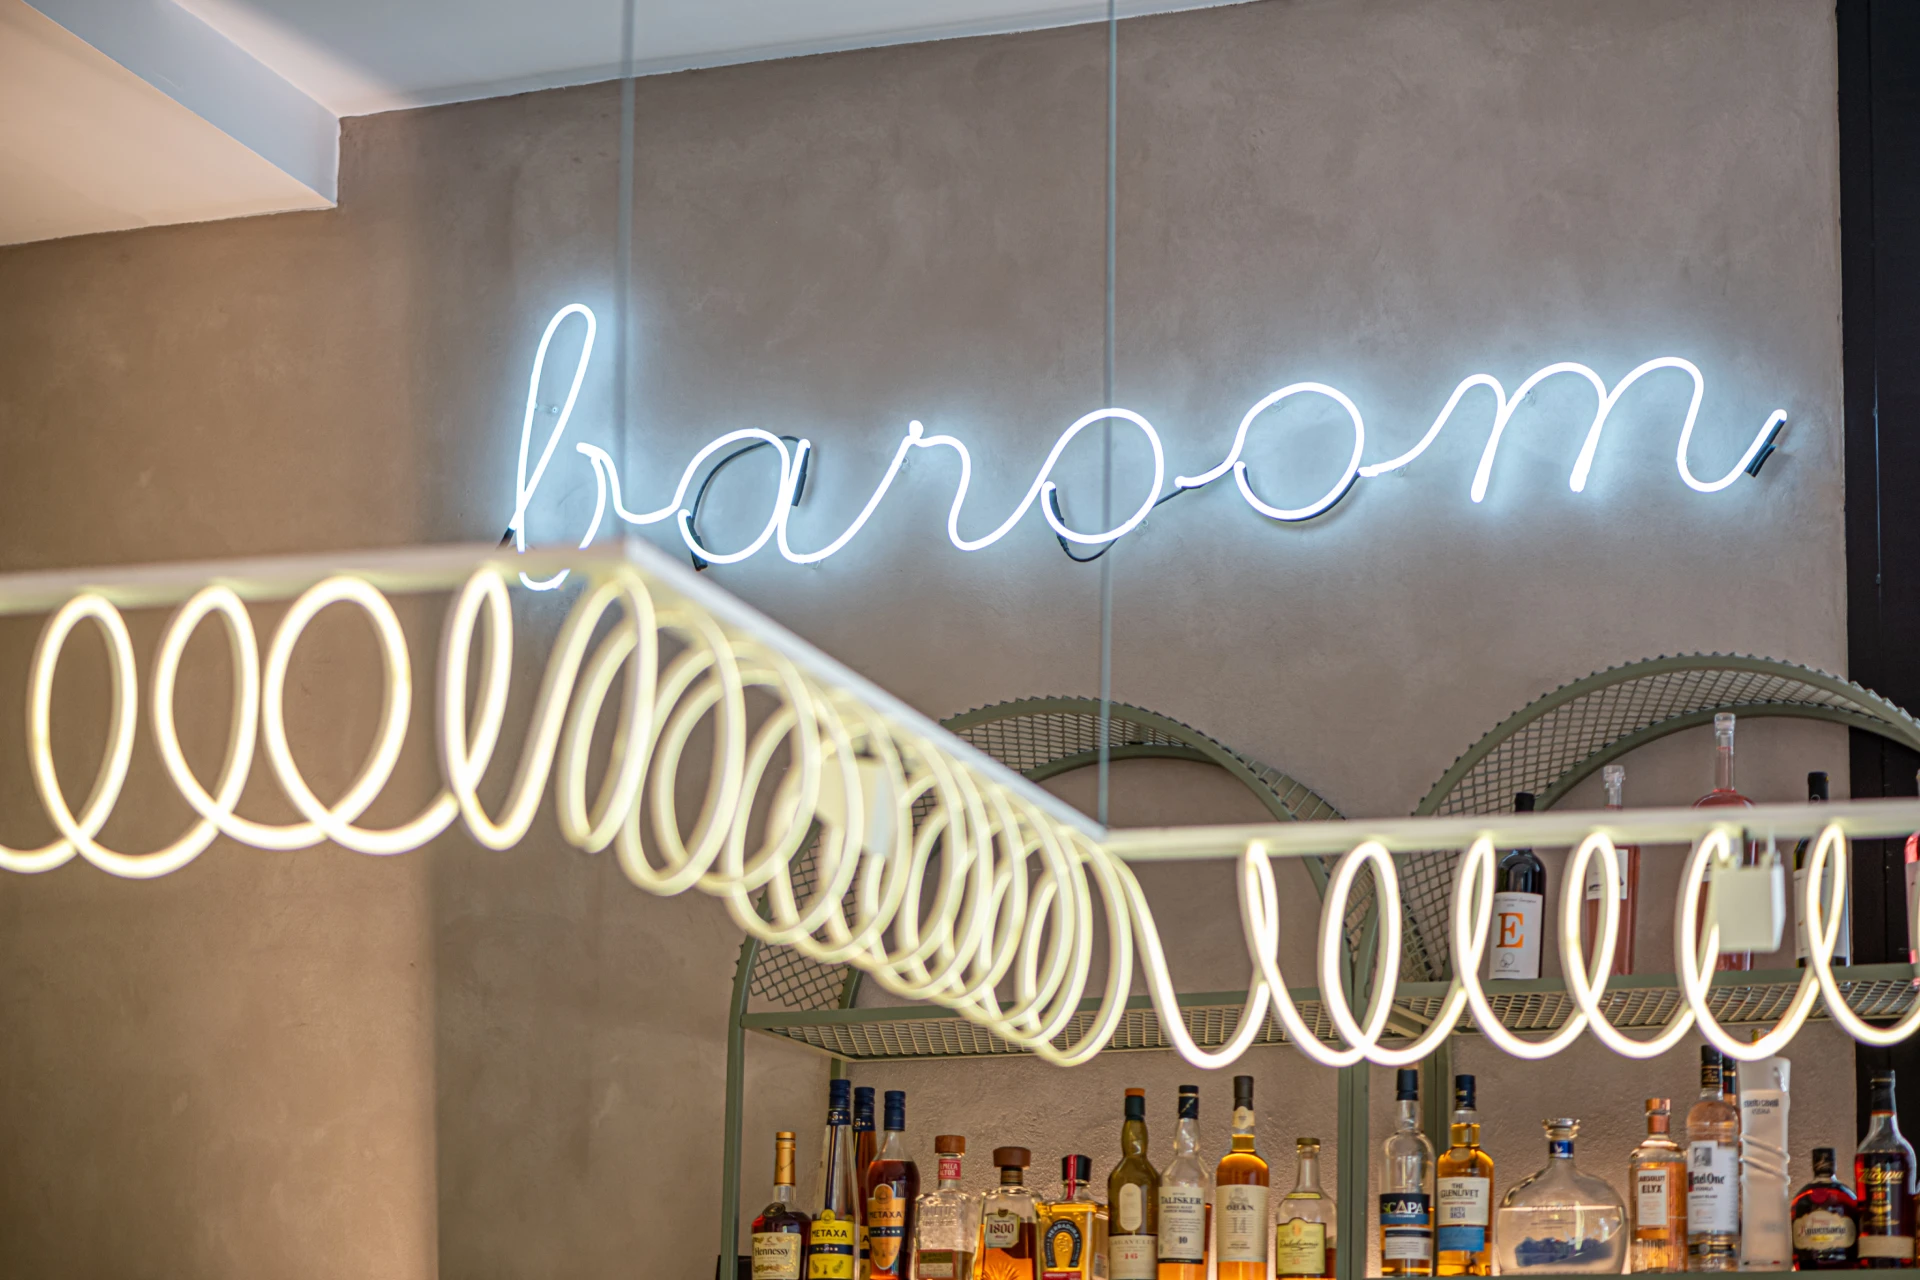 interior design cafe bar baroom peristeri lightning